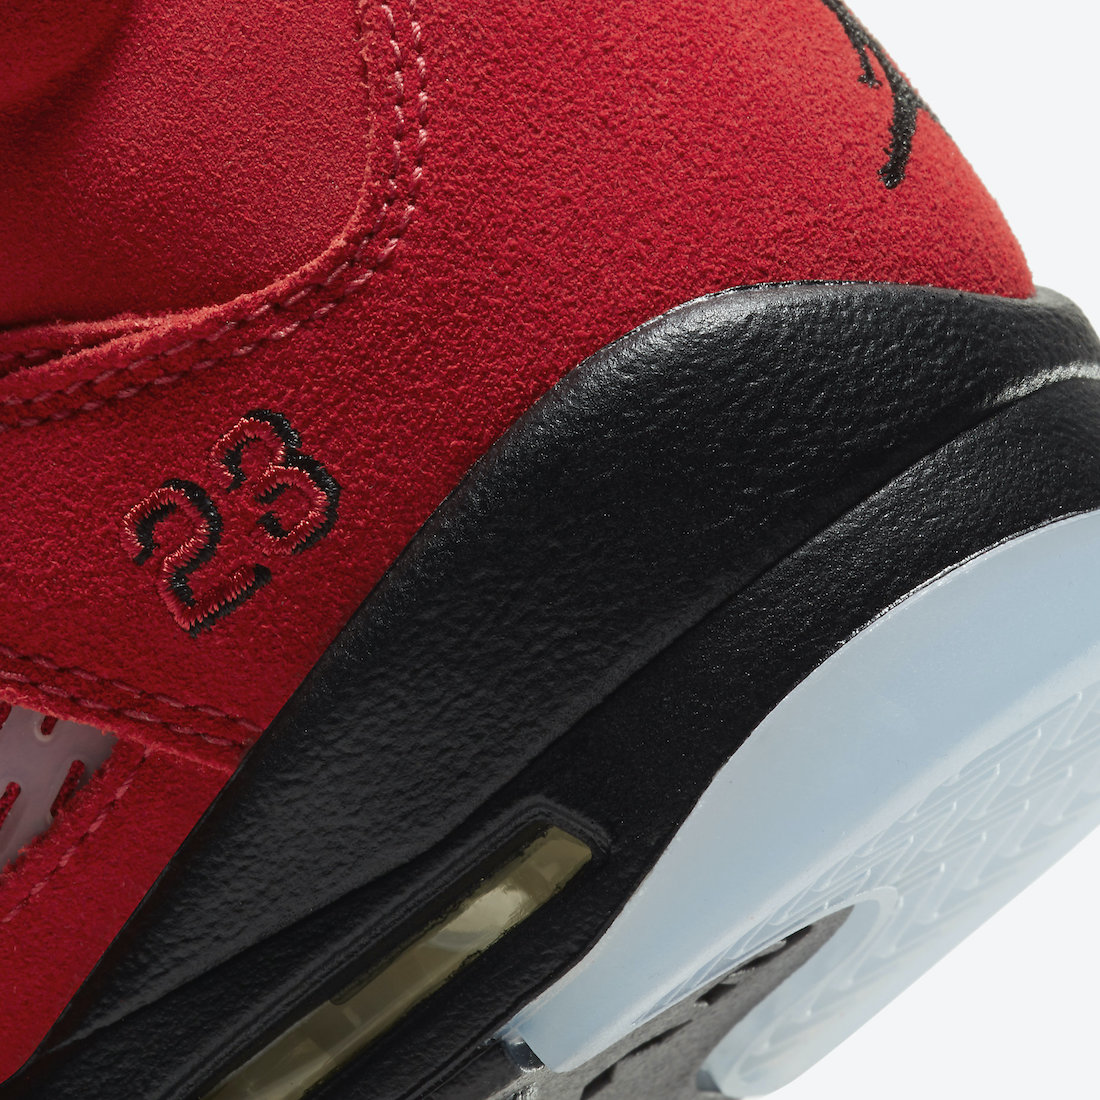 Air Jordan 5 GS Raging Bulls 440888-600 Release Date